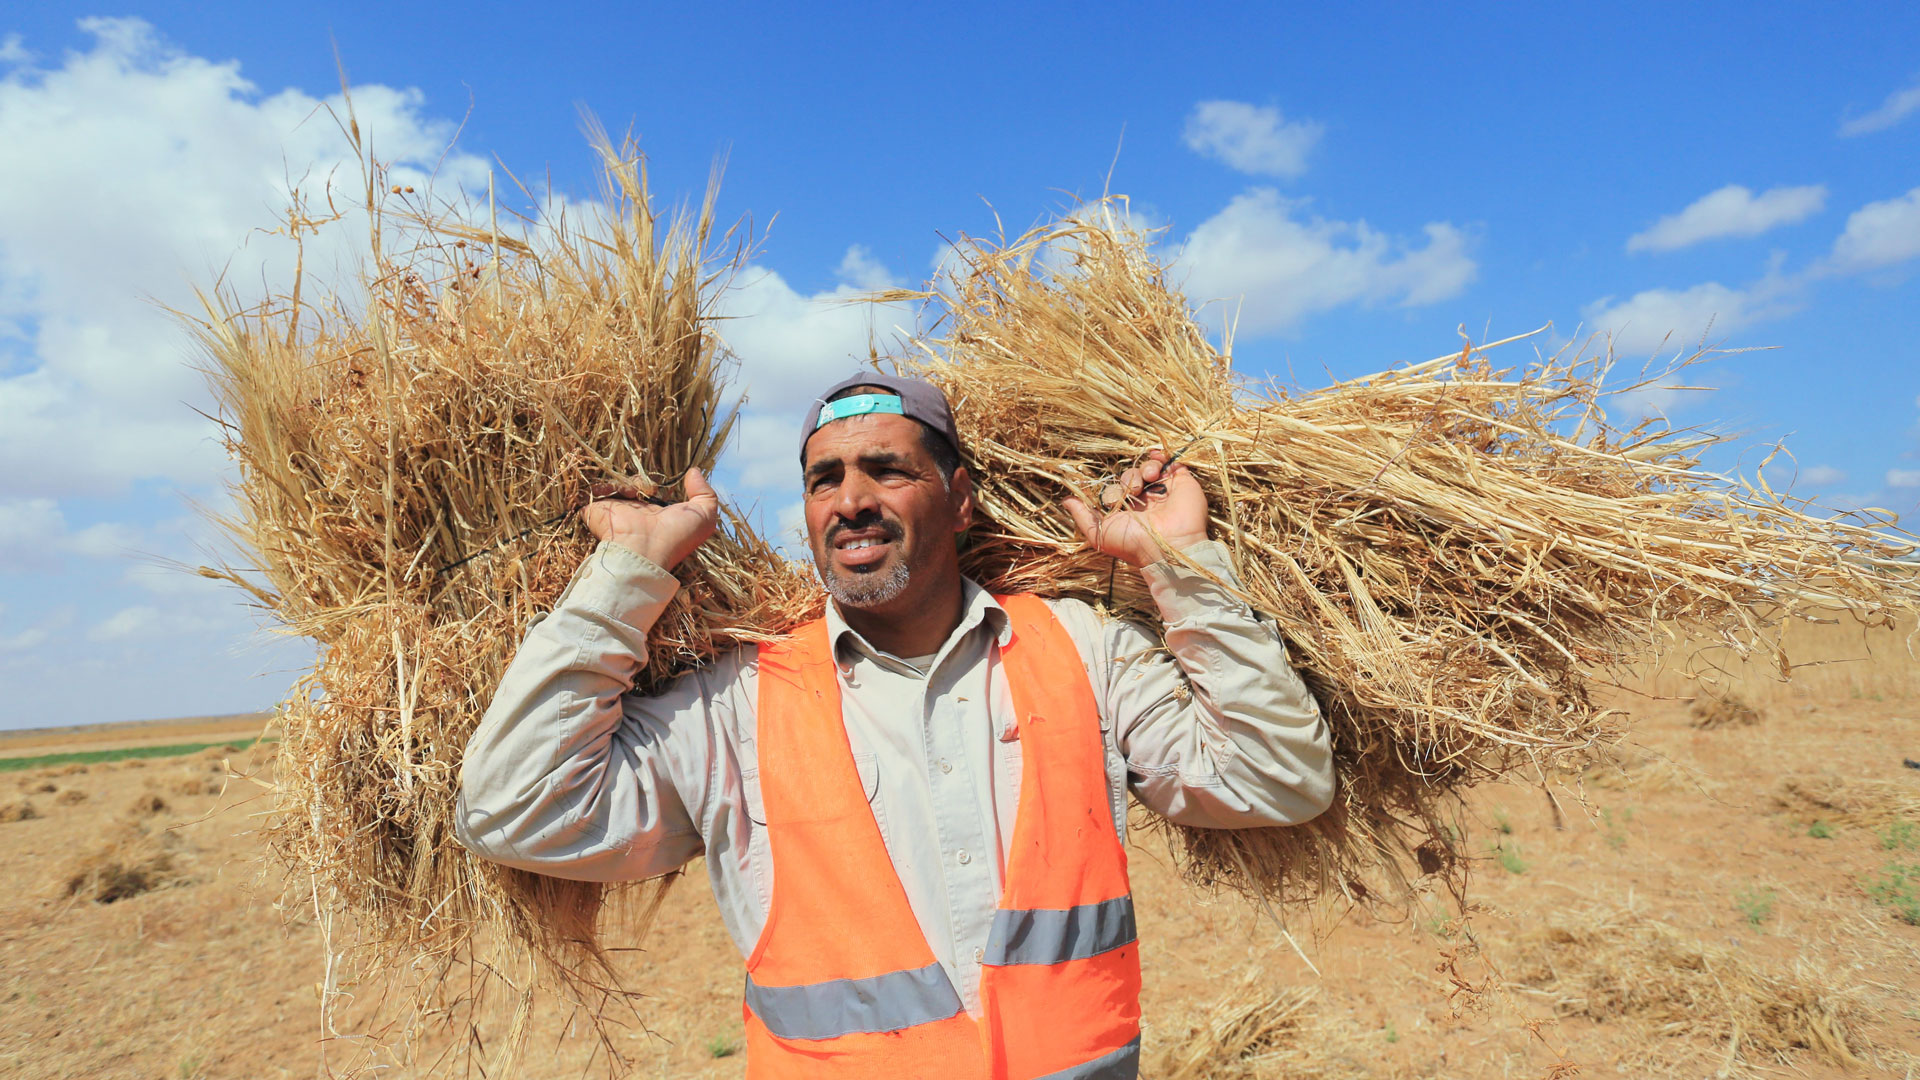 Palästinensische Bauern ernten Weizen auf einem Feld nahe der Grenze zu Israel. | picture alliance / ZUMAPRESS.com